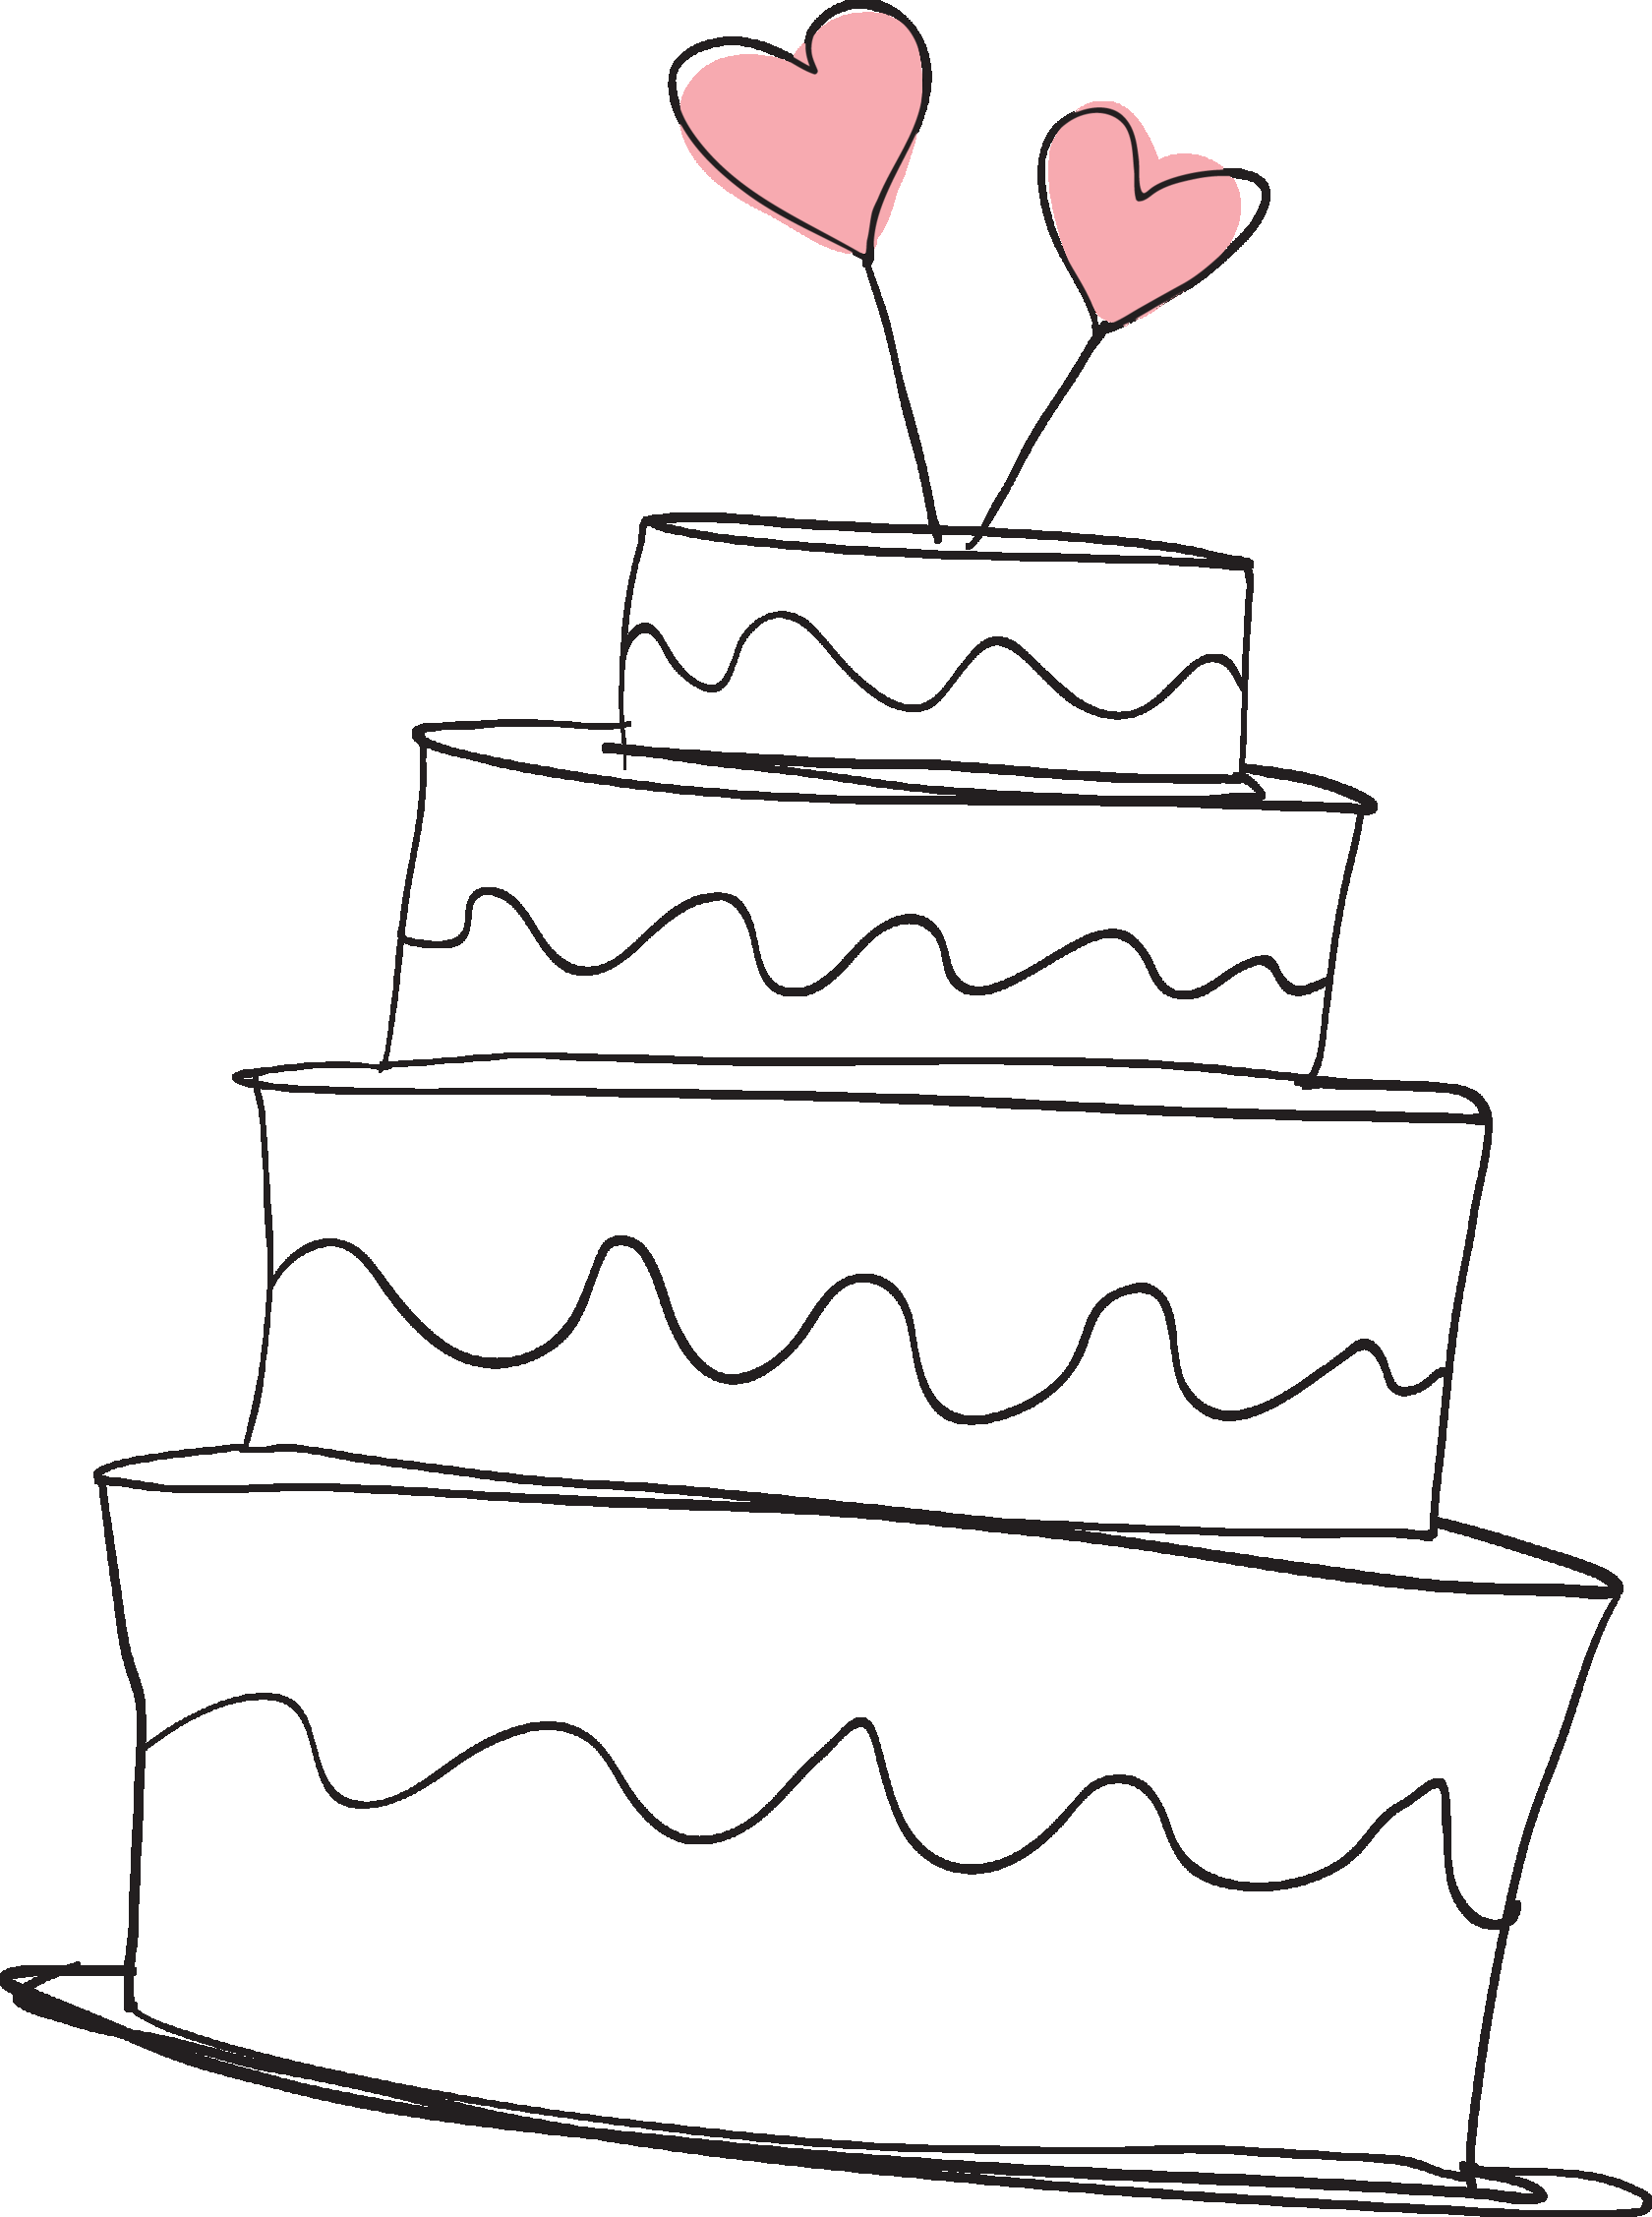 Нарисовать рисунок торта